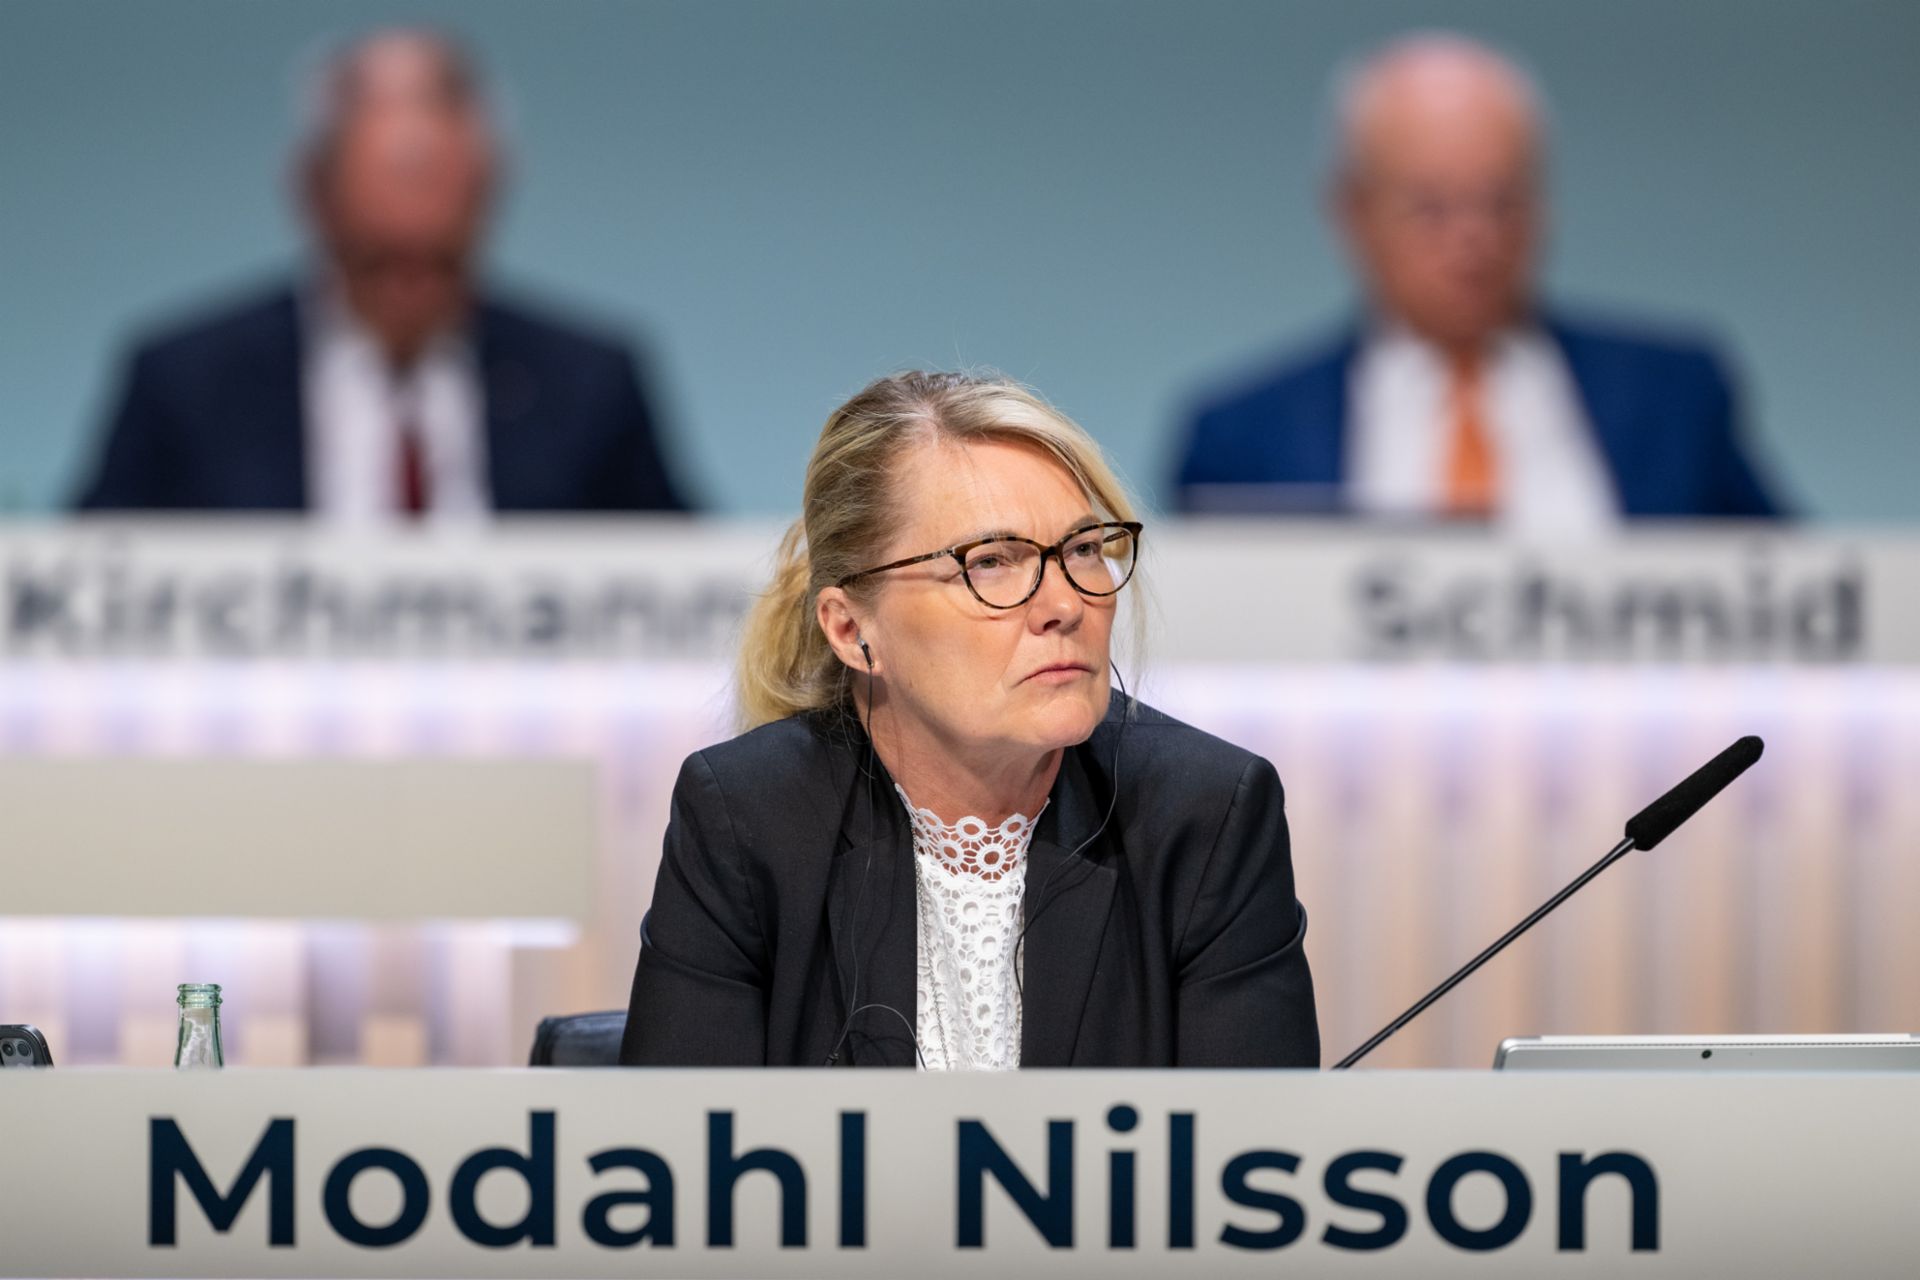 Als neues Vorstandsmitglied nimmt auch Catharina Modal Nilsson, verantwortlich für das Produktmanagement in der TRATON GROUP, erstmals an der TRATON Hauptversammlung 2023 teil.
                 